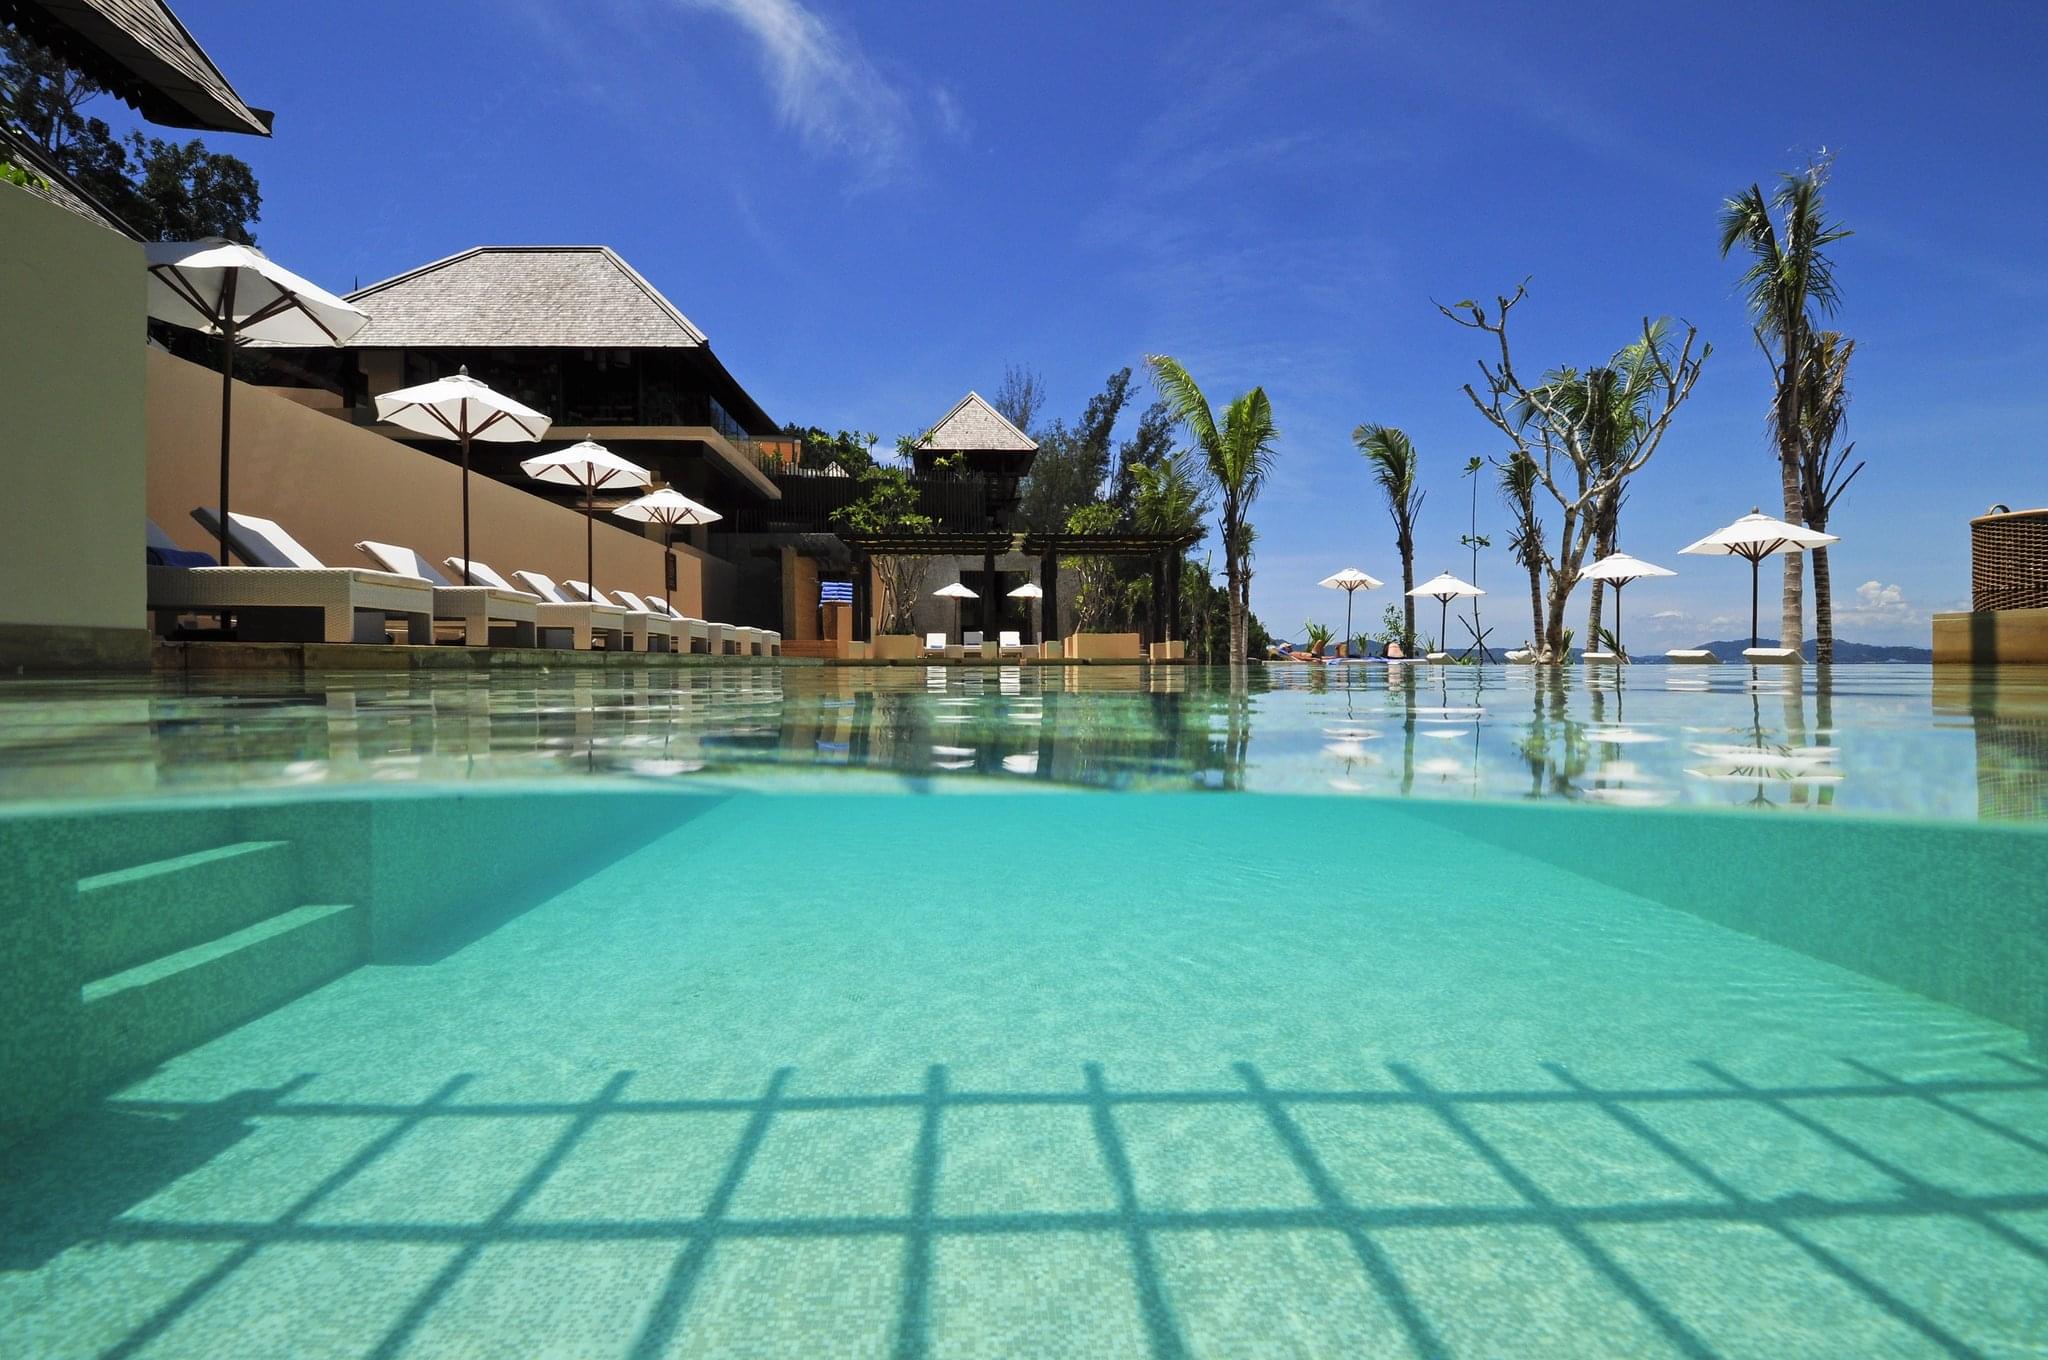 马来西亚沙巴香格里拉莎利雅酒店Shangri-La’s Rasa Ria Resort & Spa – 爱岛人 海岛旅行专家